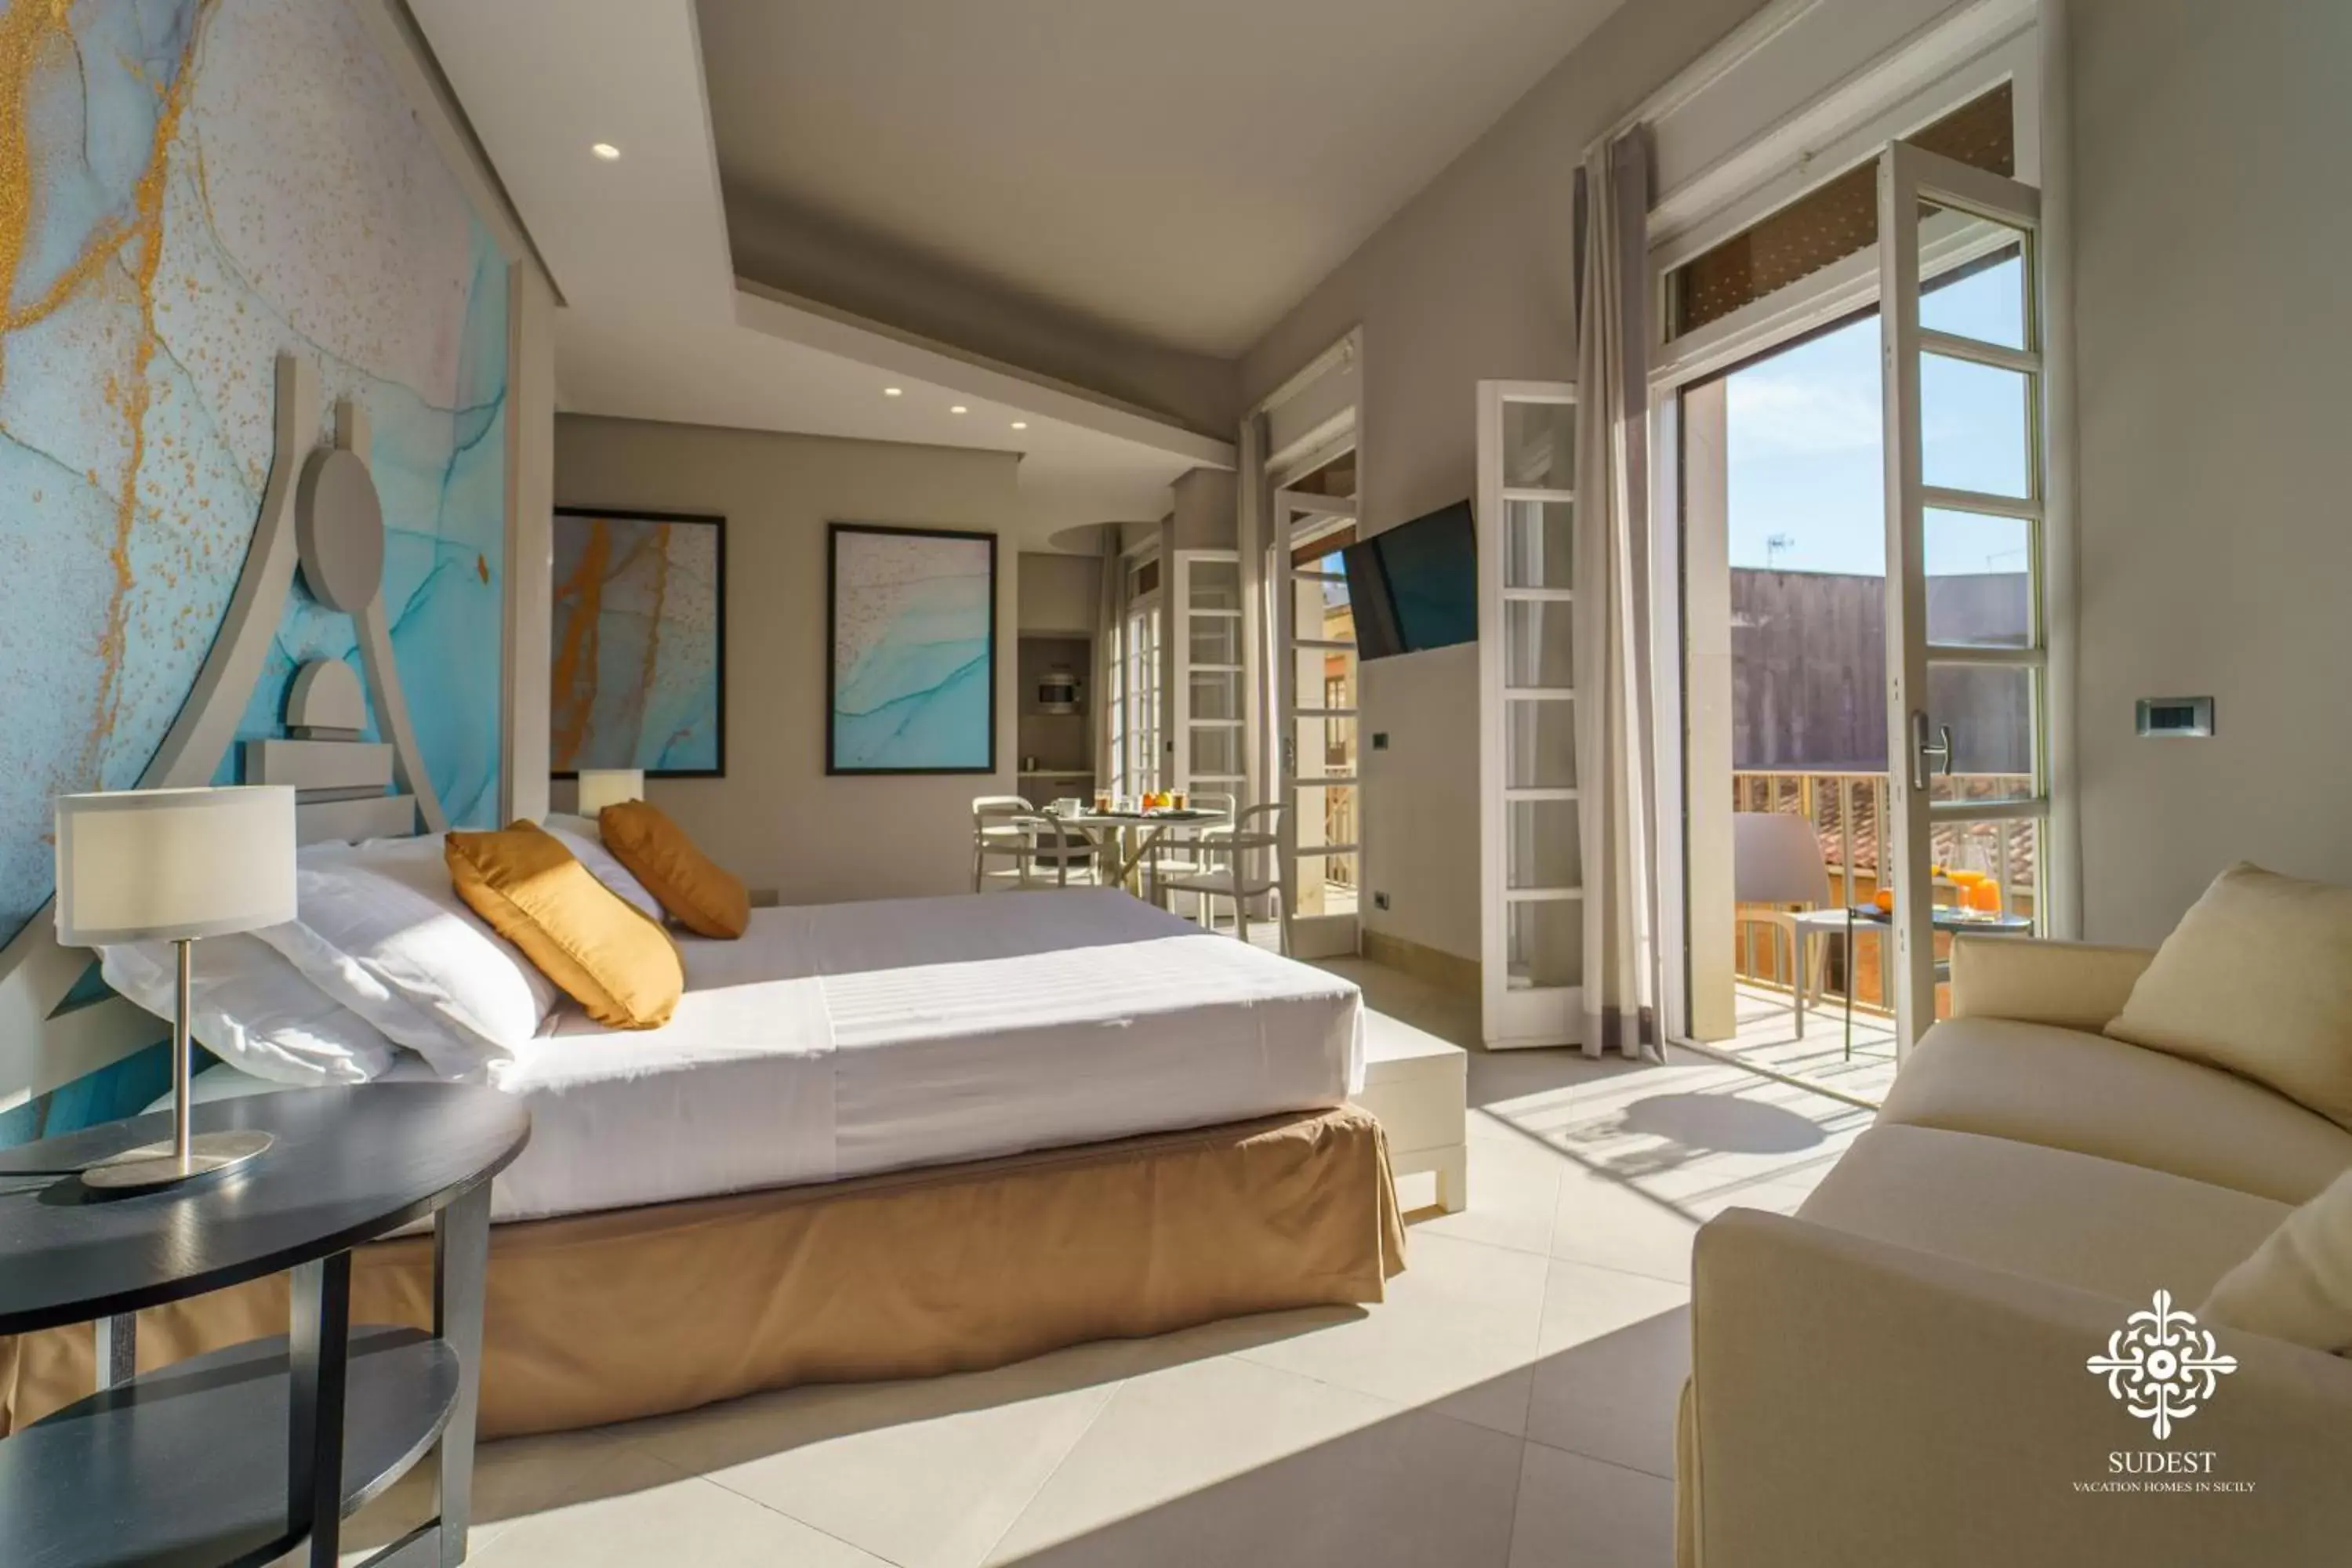 Bedroom in Matteotti Luxury Residence